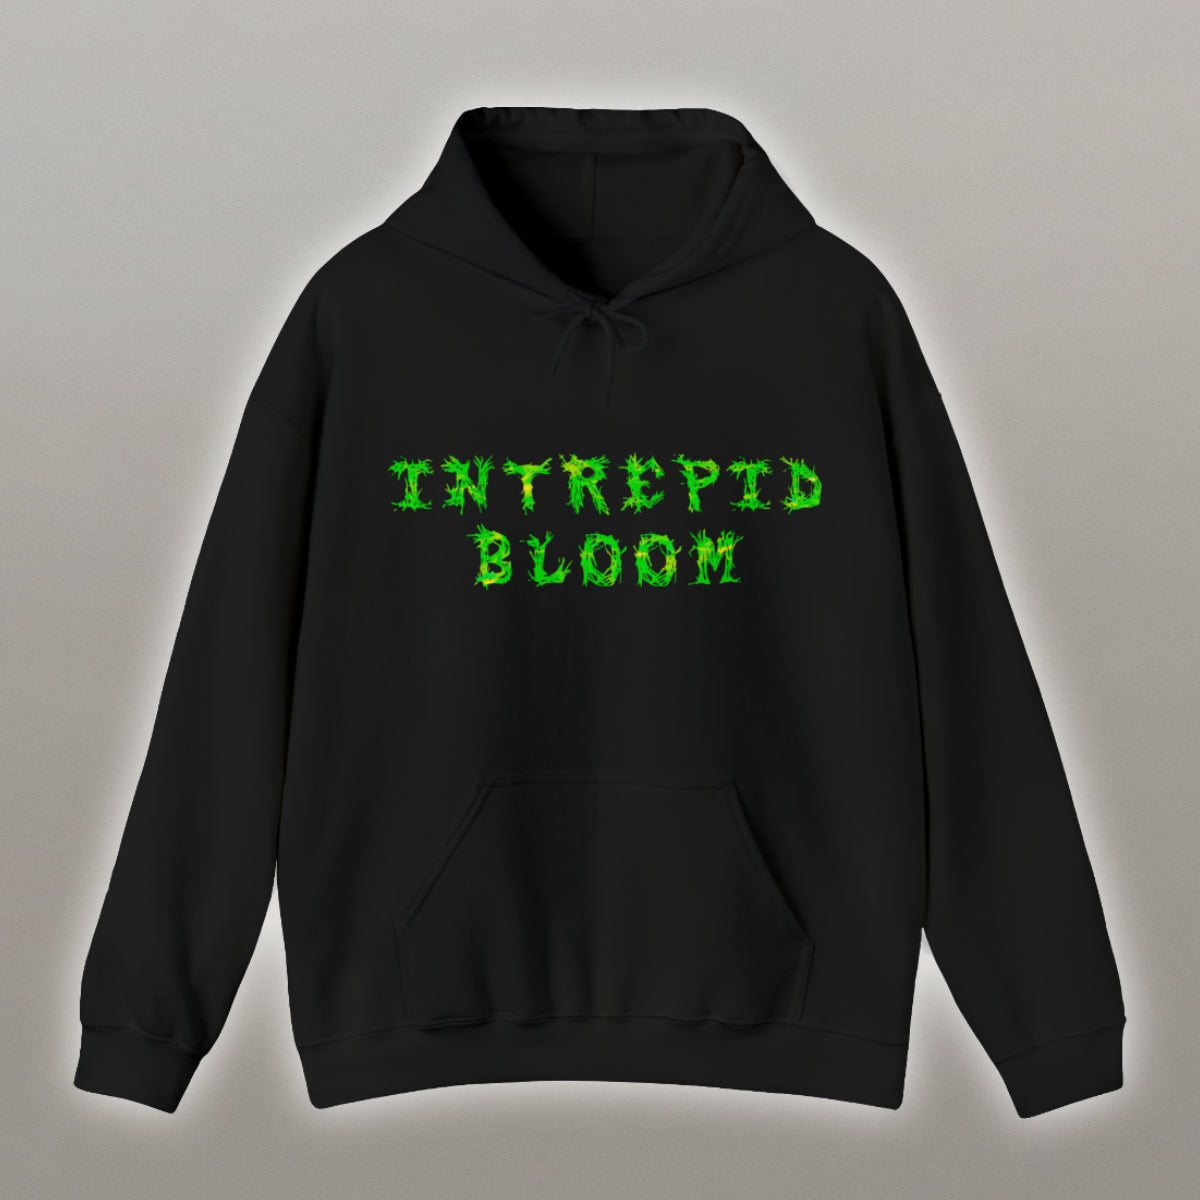 Intrepid Bloom - Unisex Hoodie